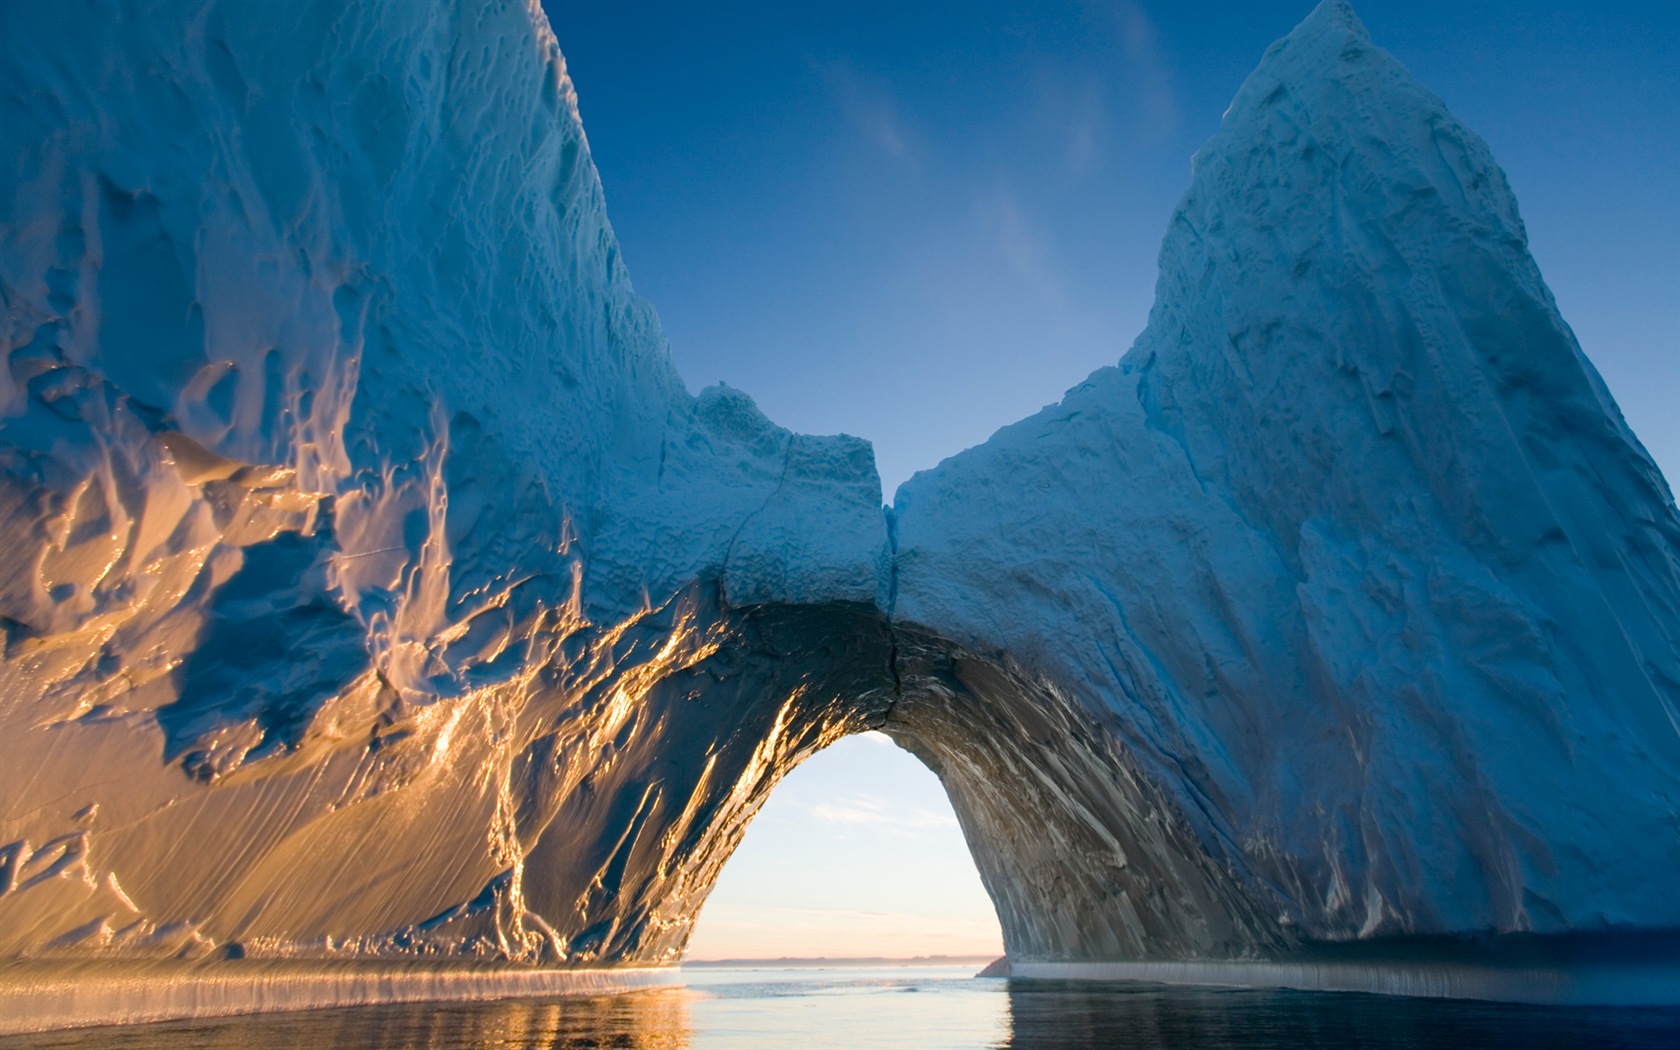 Windows 8: Fondos del Ártico, el paisaje ecológico, ártico animales #3 - 1680x1050